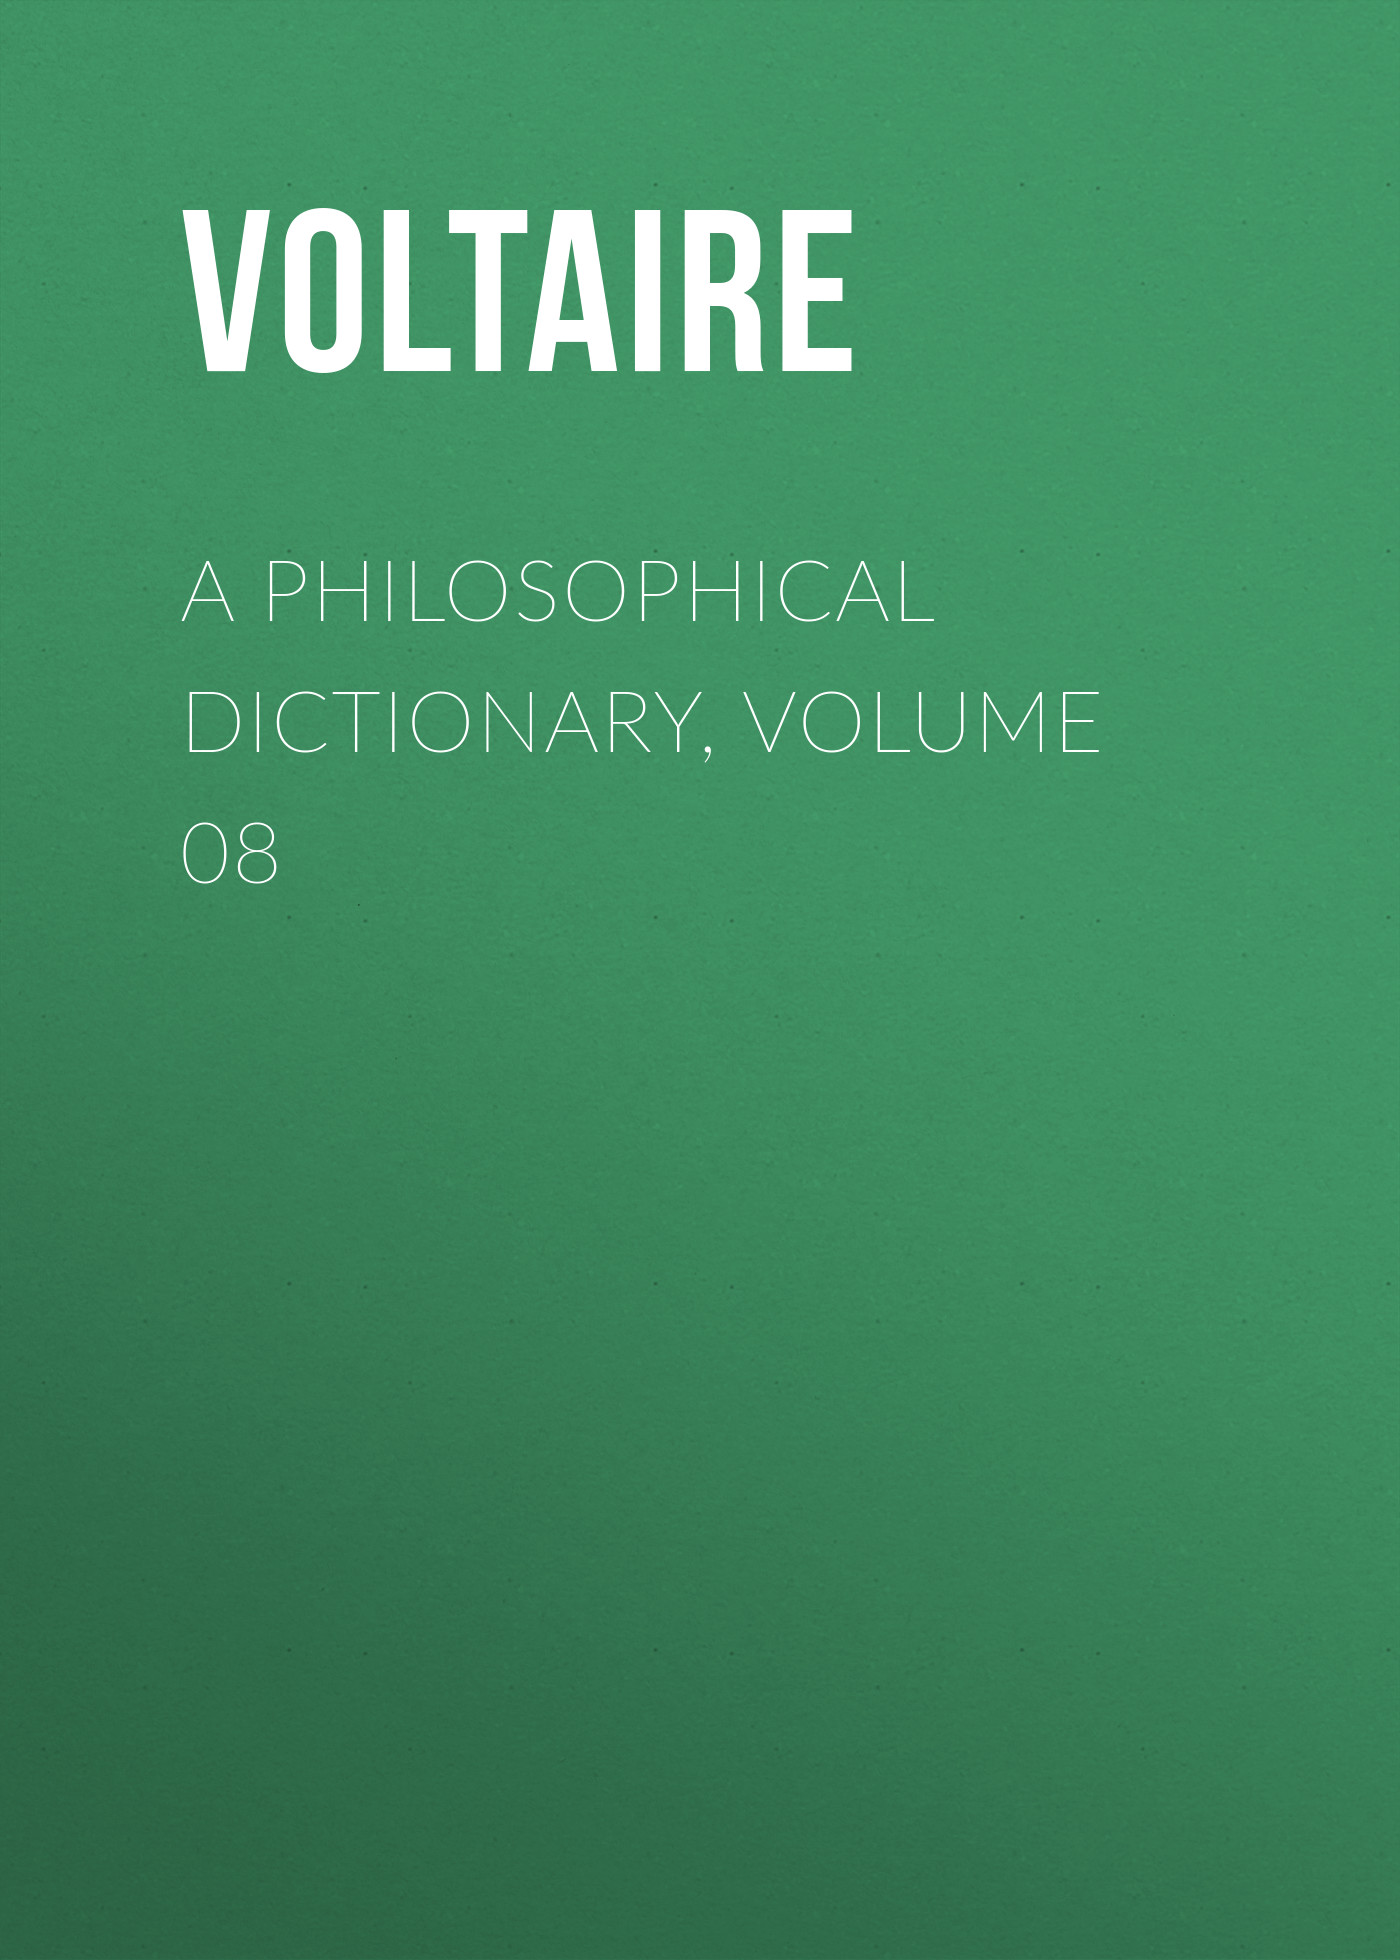 Книга A Philosophical Dictionary, Volume 08 из серии , созданная  Voltaire, может относится к жанру Философия, Литература 18 века, Зарубежная классика. Стоимость электронной книги A Philosophical Dictionary, Volume 08 с идентификатором 25560868 составляет 0 руб.